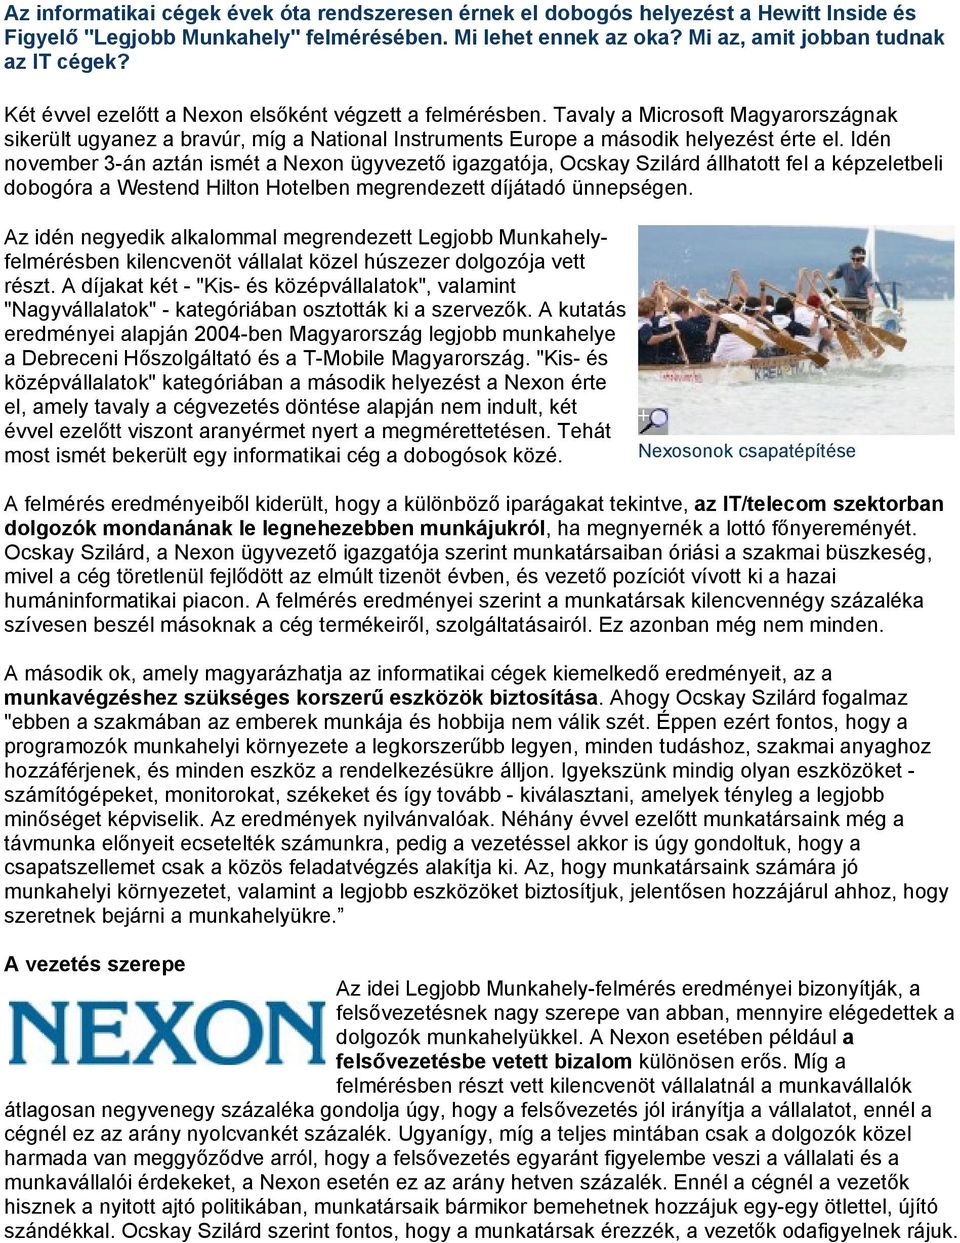 Idén november 3-án aztán ismét a Nexon ügyvezető igazgatója, Ocskay Szilárd állhatott fel a képzeletbeli dobogóra a Westend Hilton Hotelben megrendezett díjátadó ünnepségen.